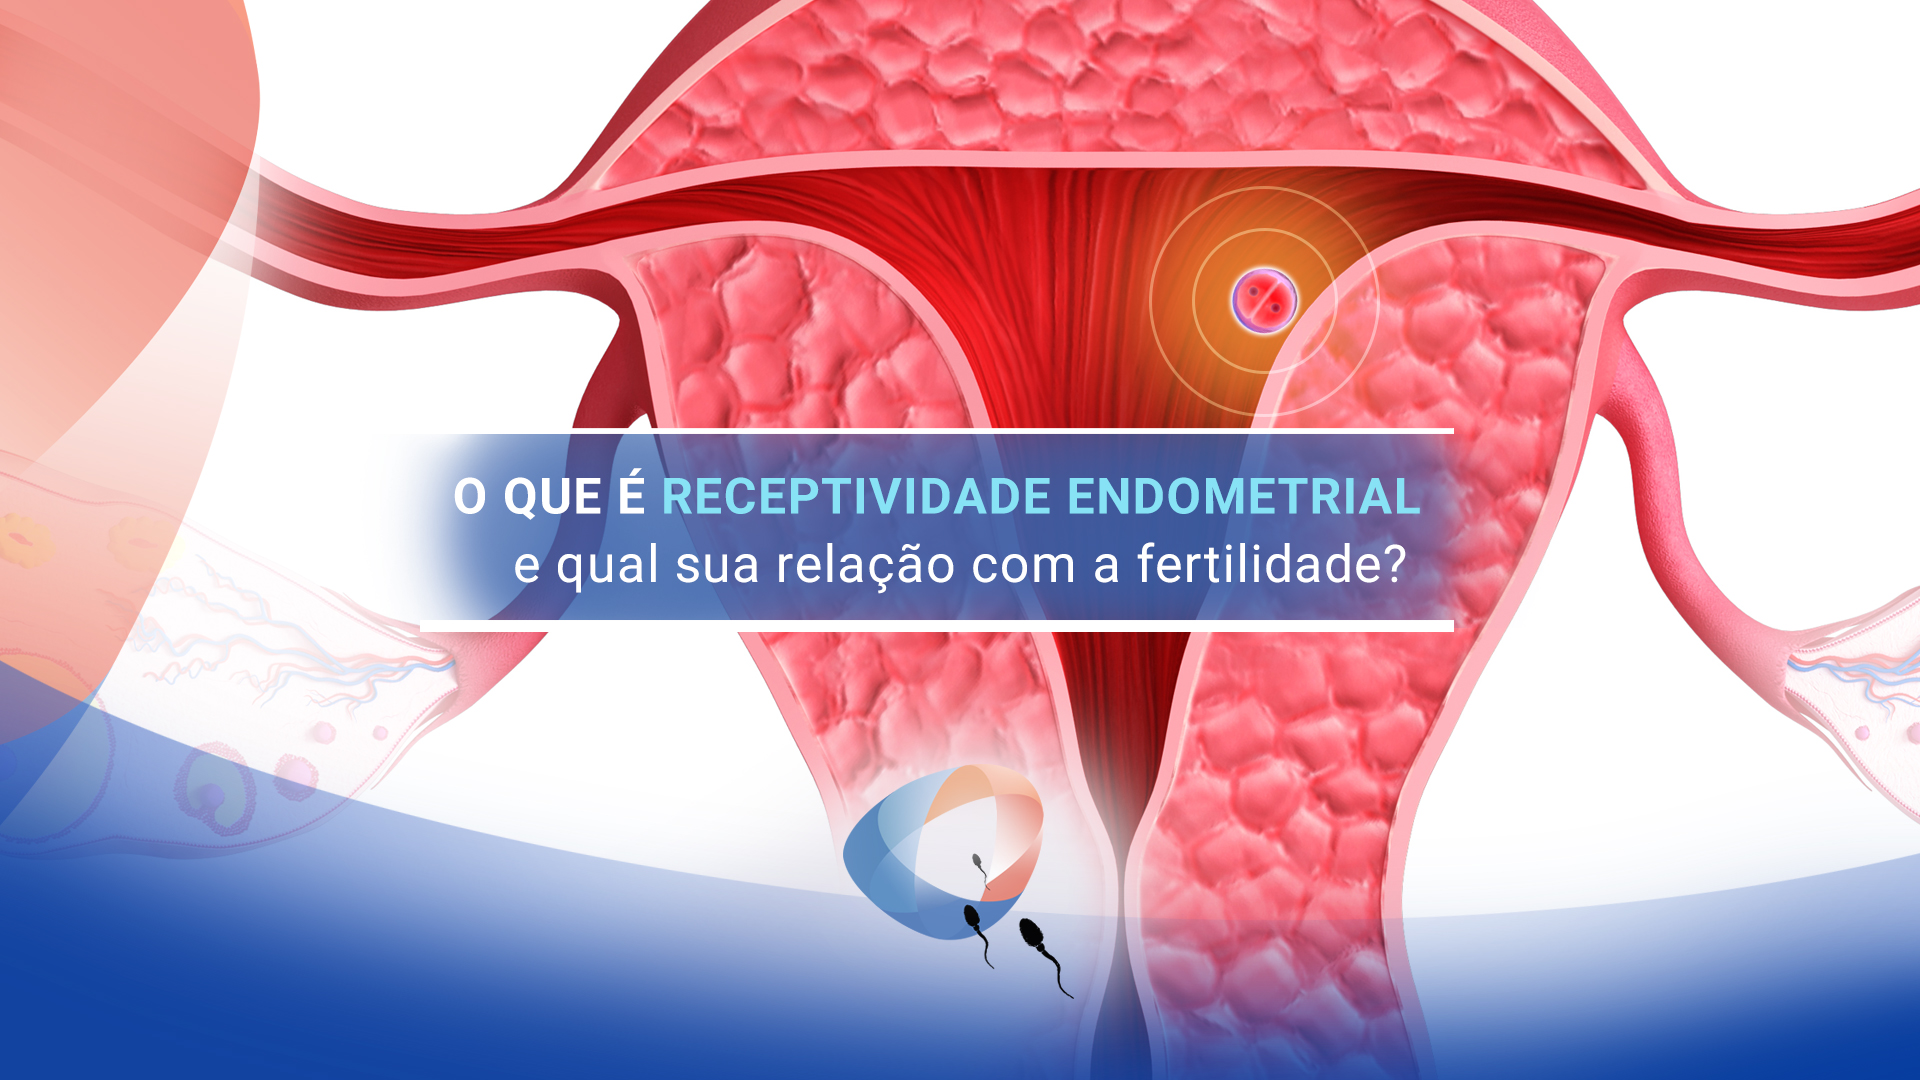 O que é receptividade endometrial e qual sua relação com a fertilidade?